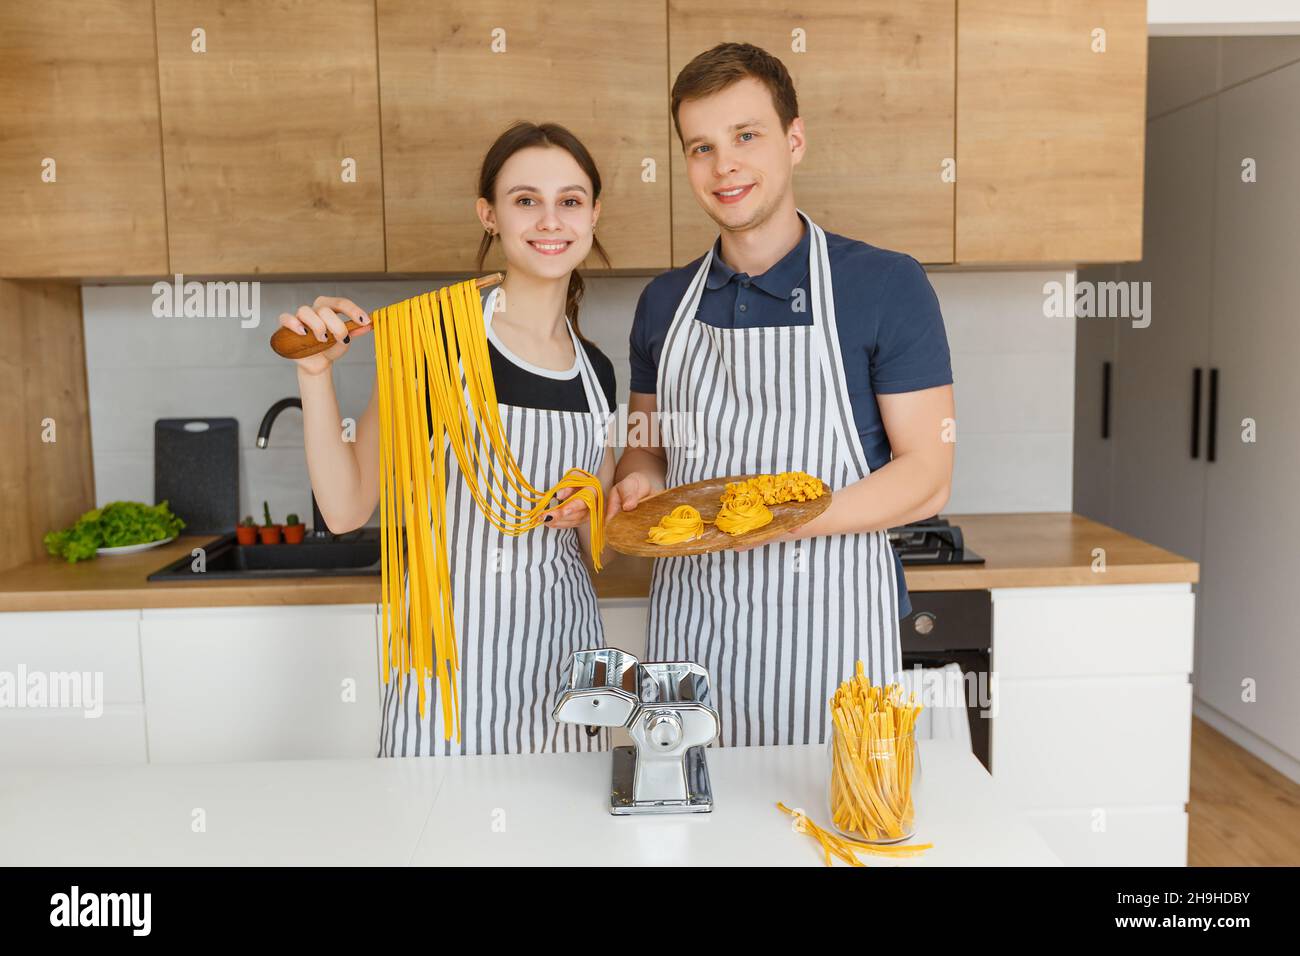 Porträt eines jungen Paares in Schürzen, das rohe Nudelnudeln hält. Familienküche italienische vegane Küche zu Hause. Konzept der häuslichen Lebensweise, gesunde Ernährung Stockfoto